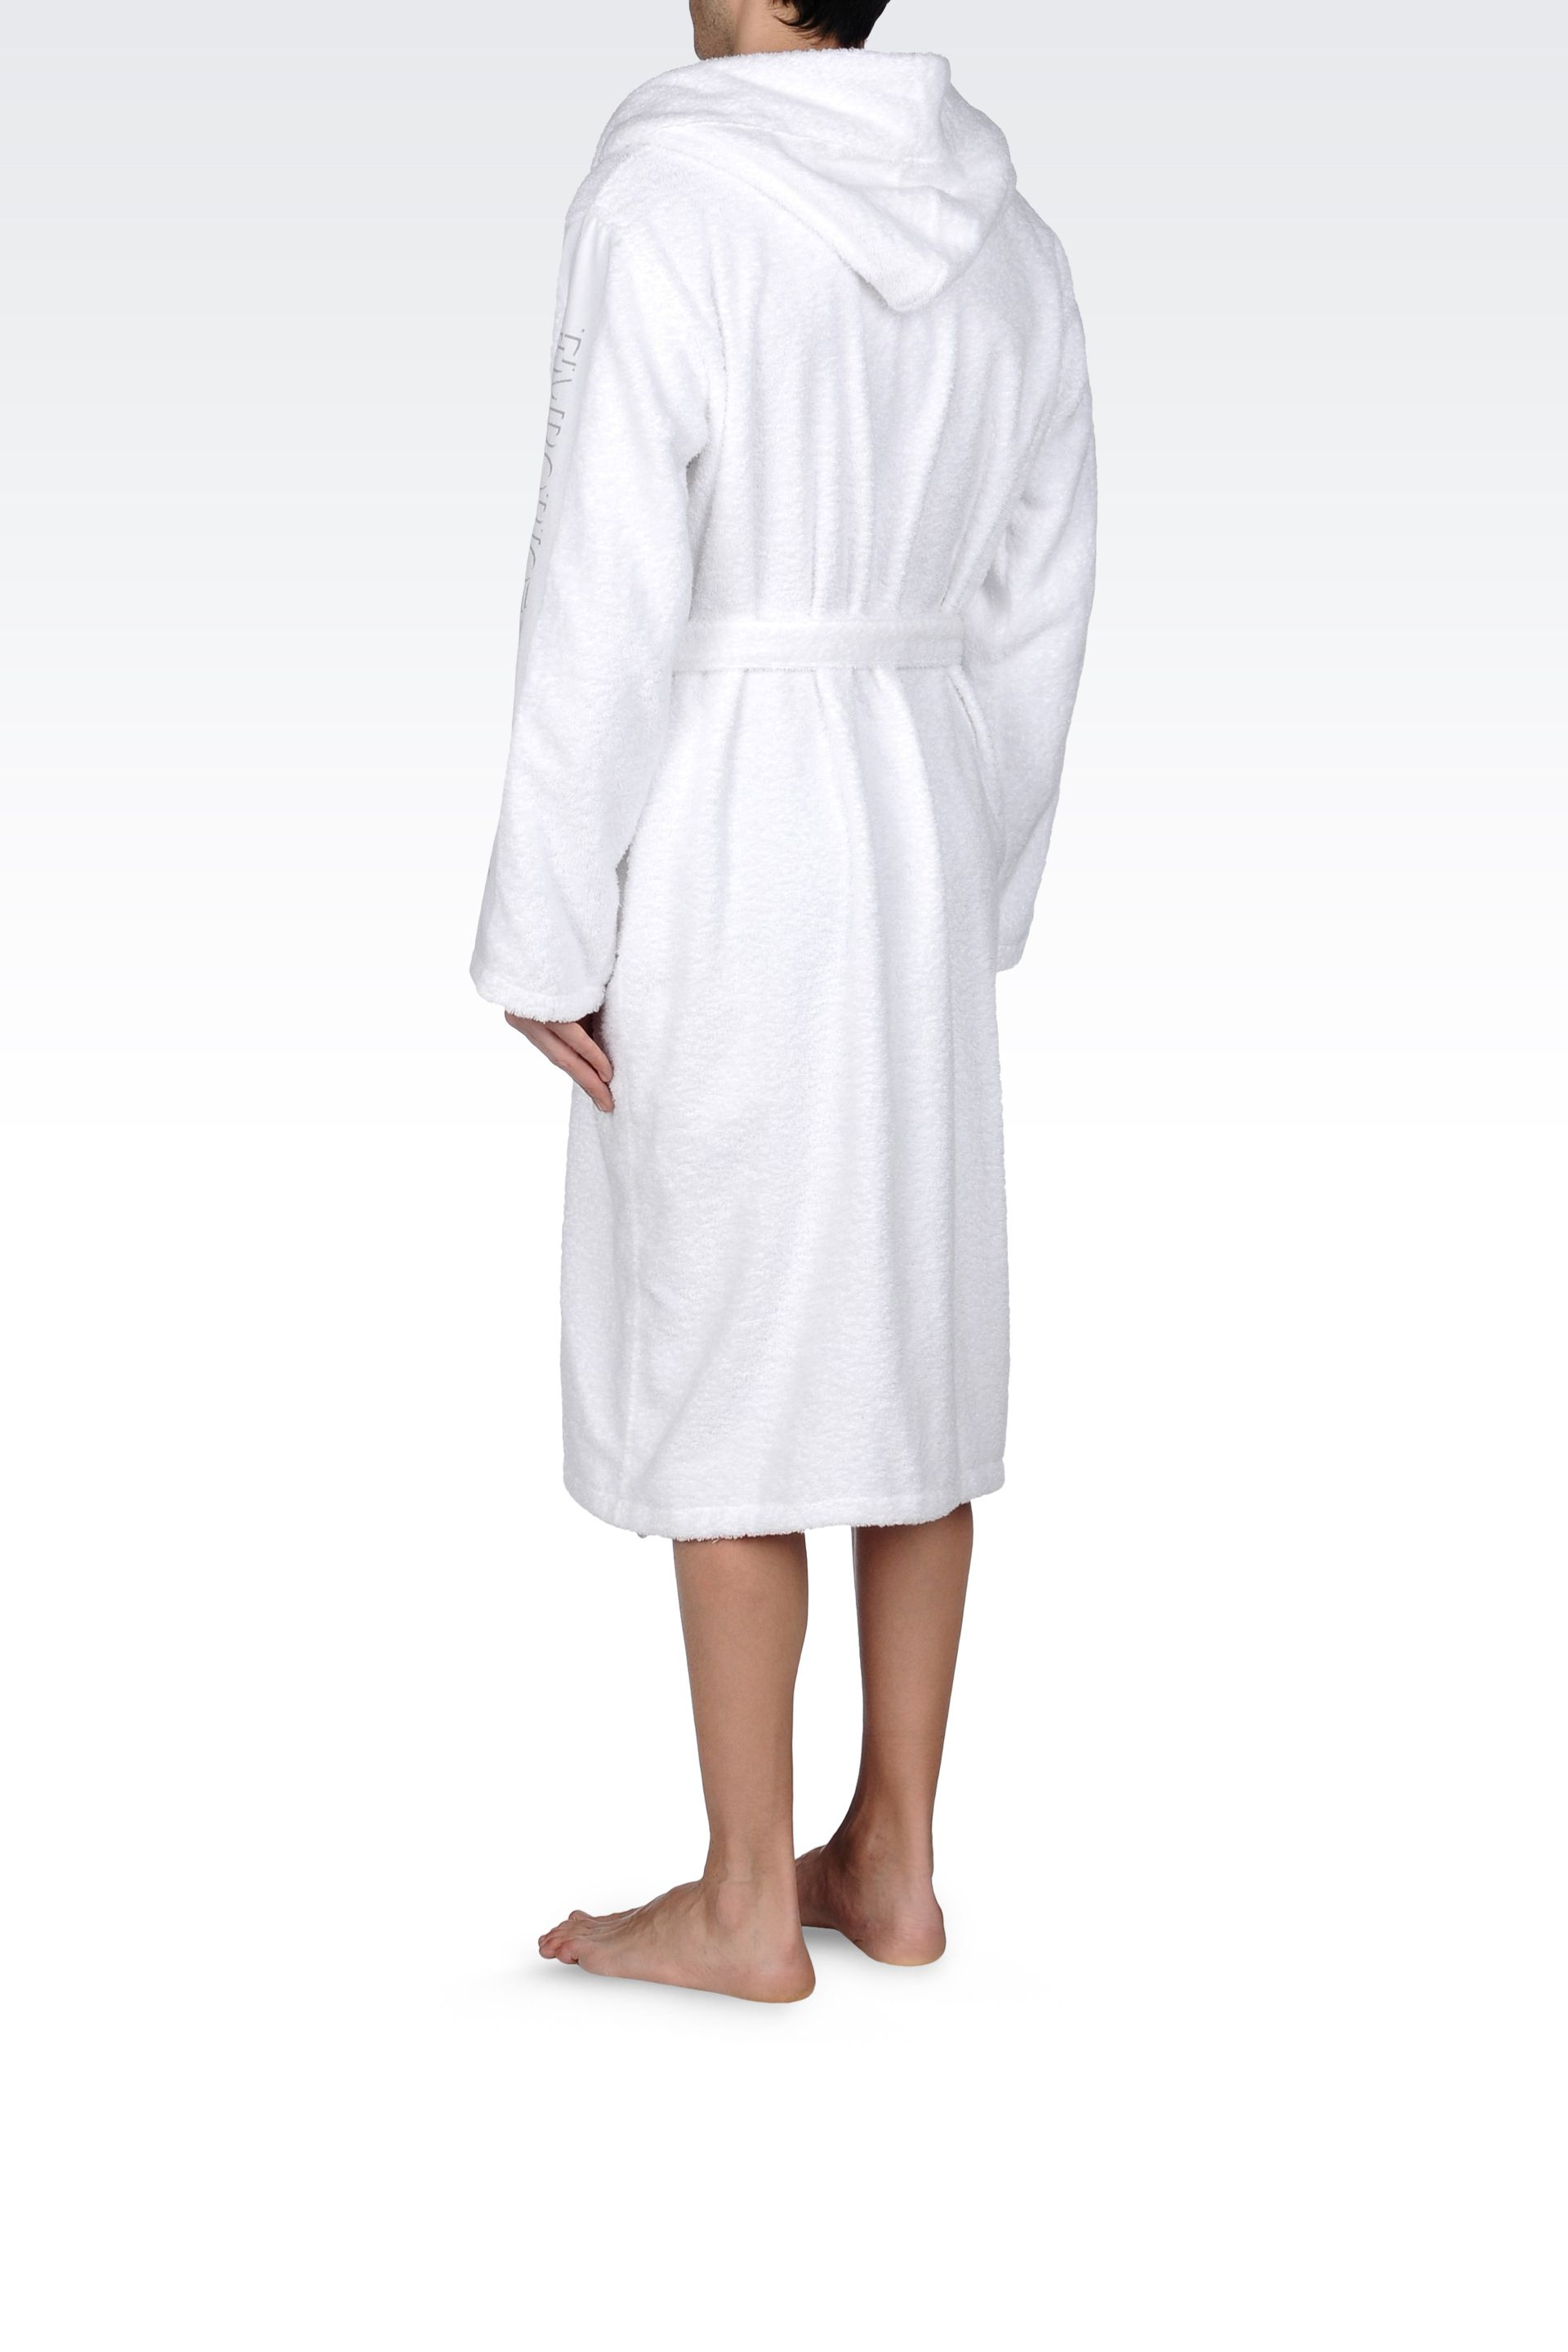 armani bathrobe